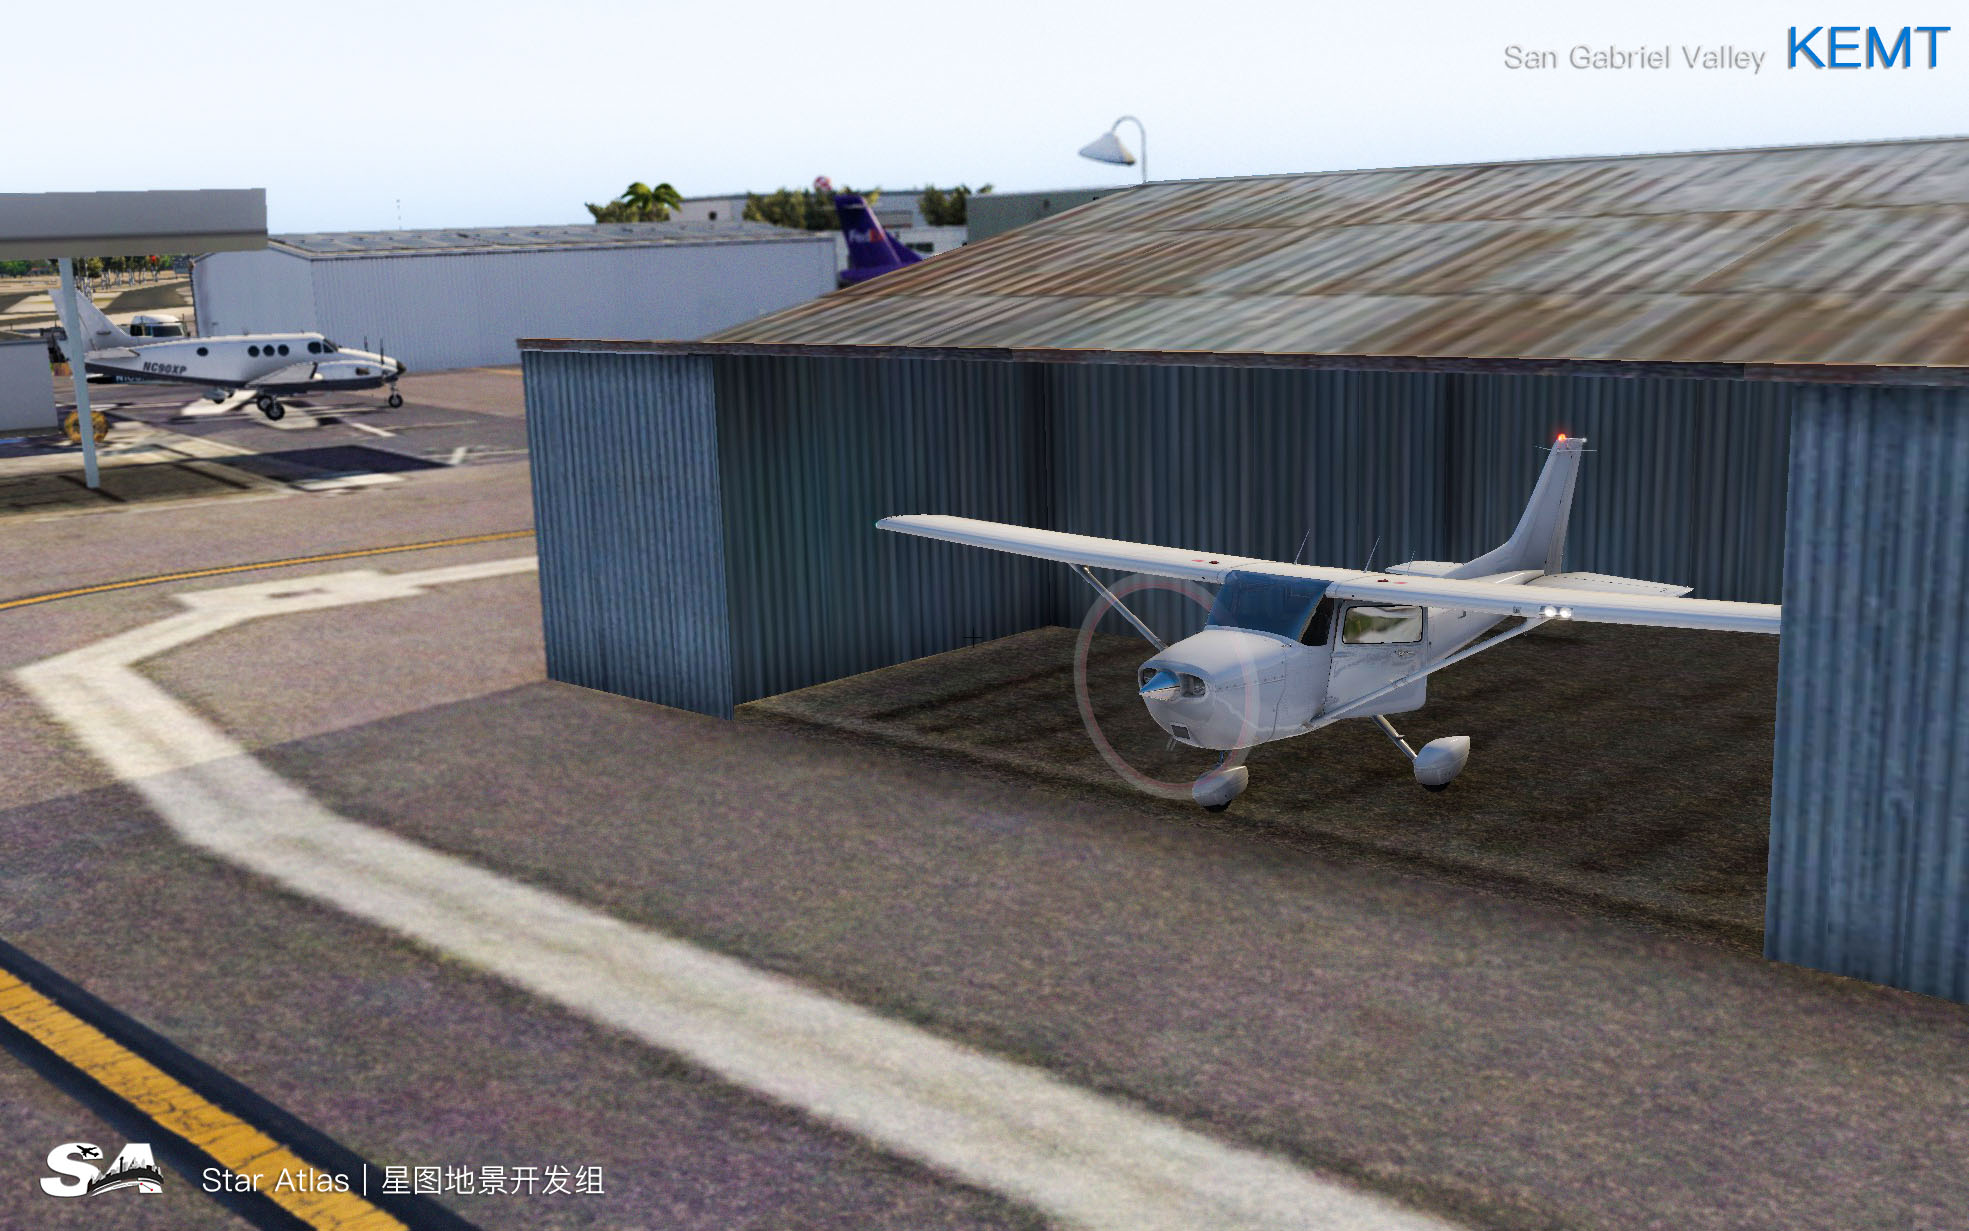 【X-Plane】KEMT-圣盖博谷机场 HD 1.0-2762 